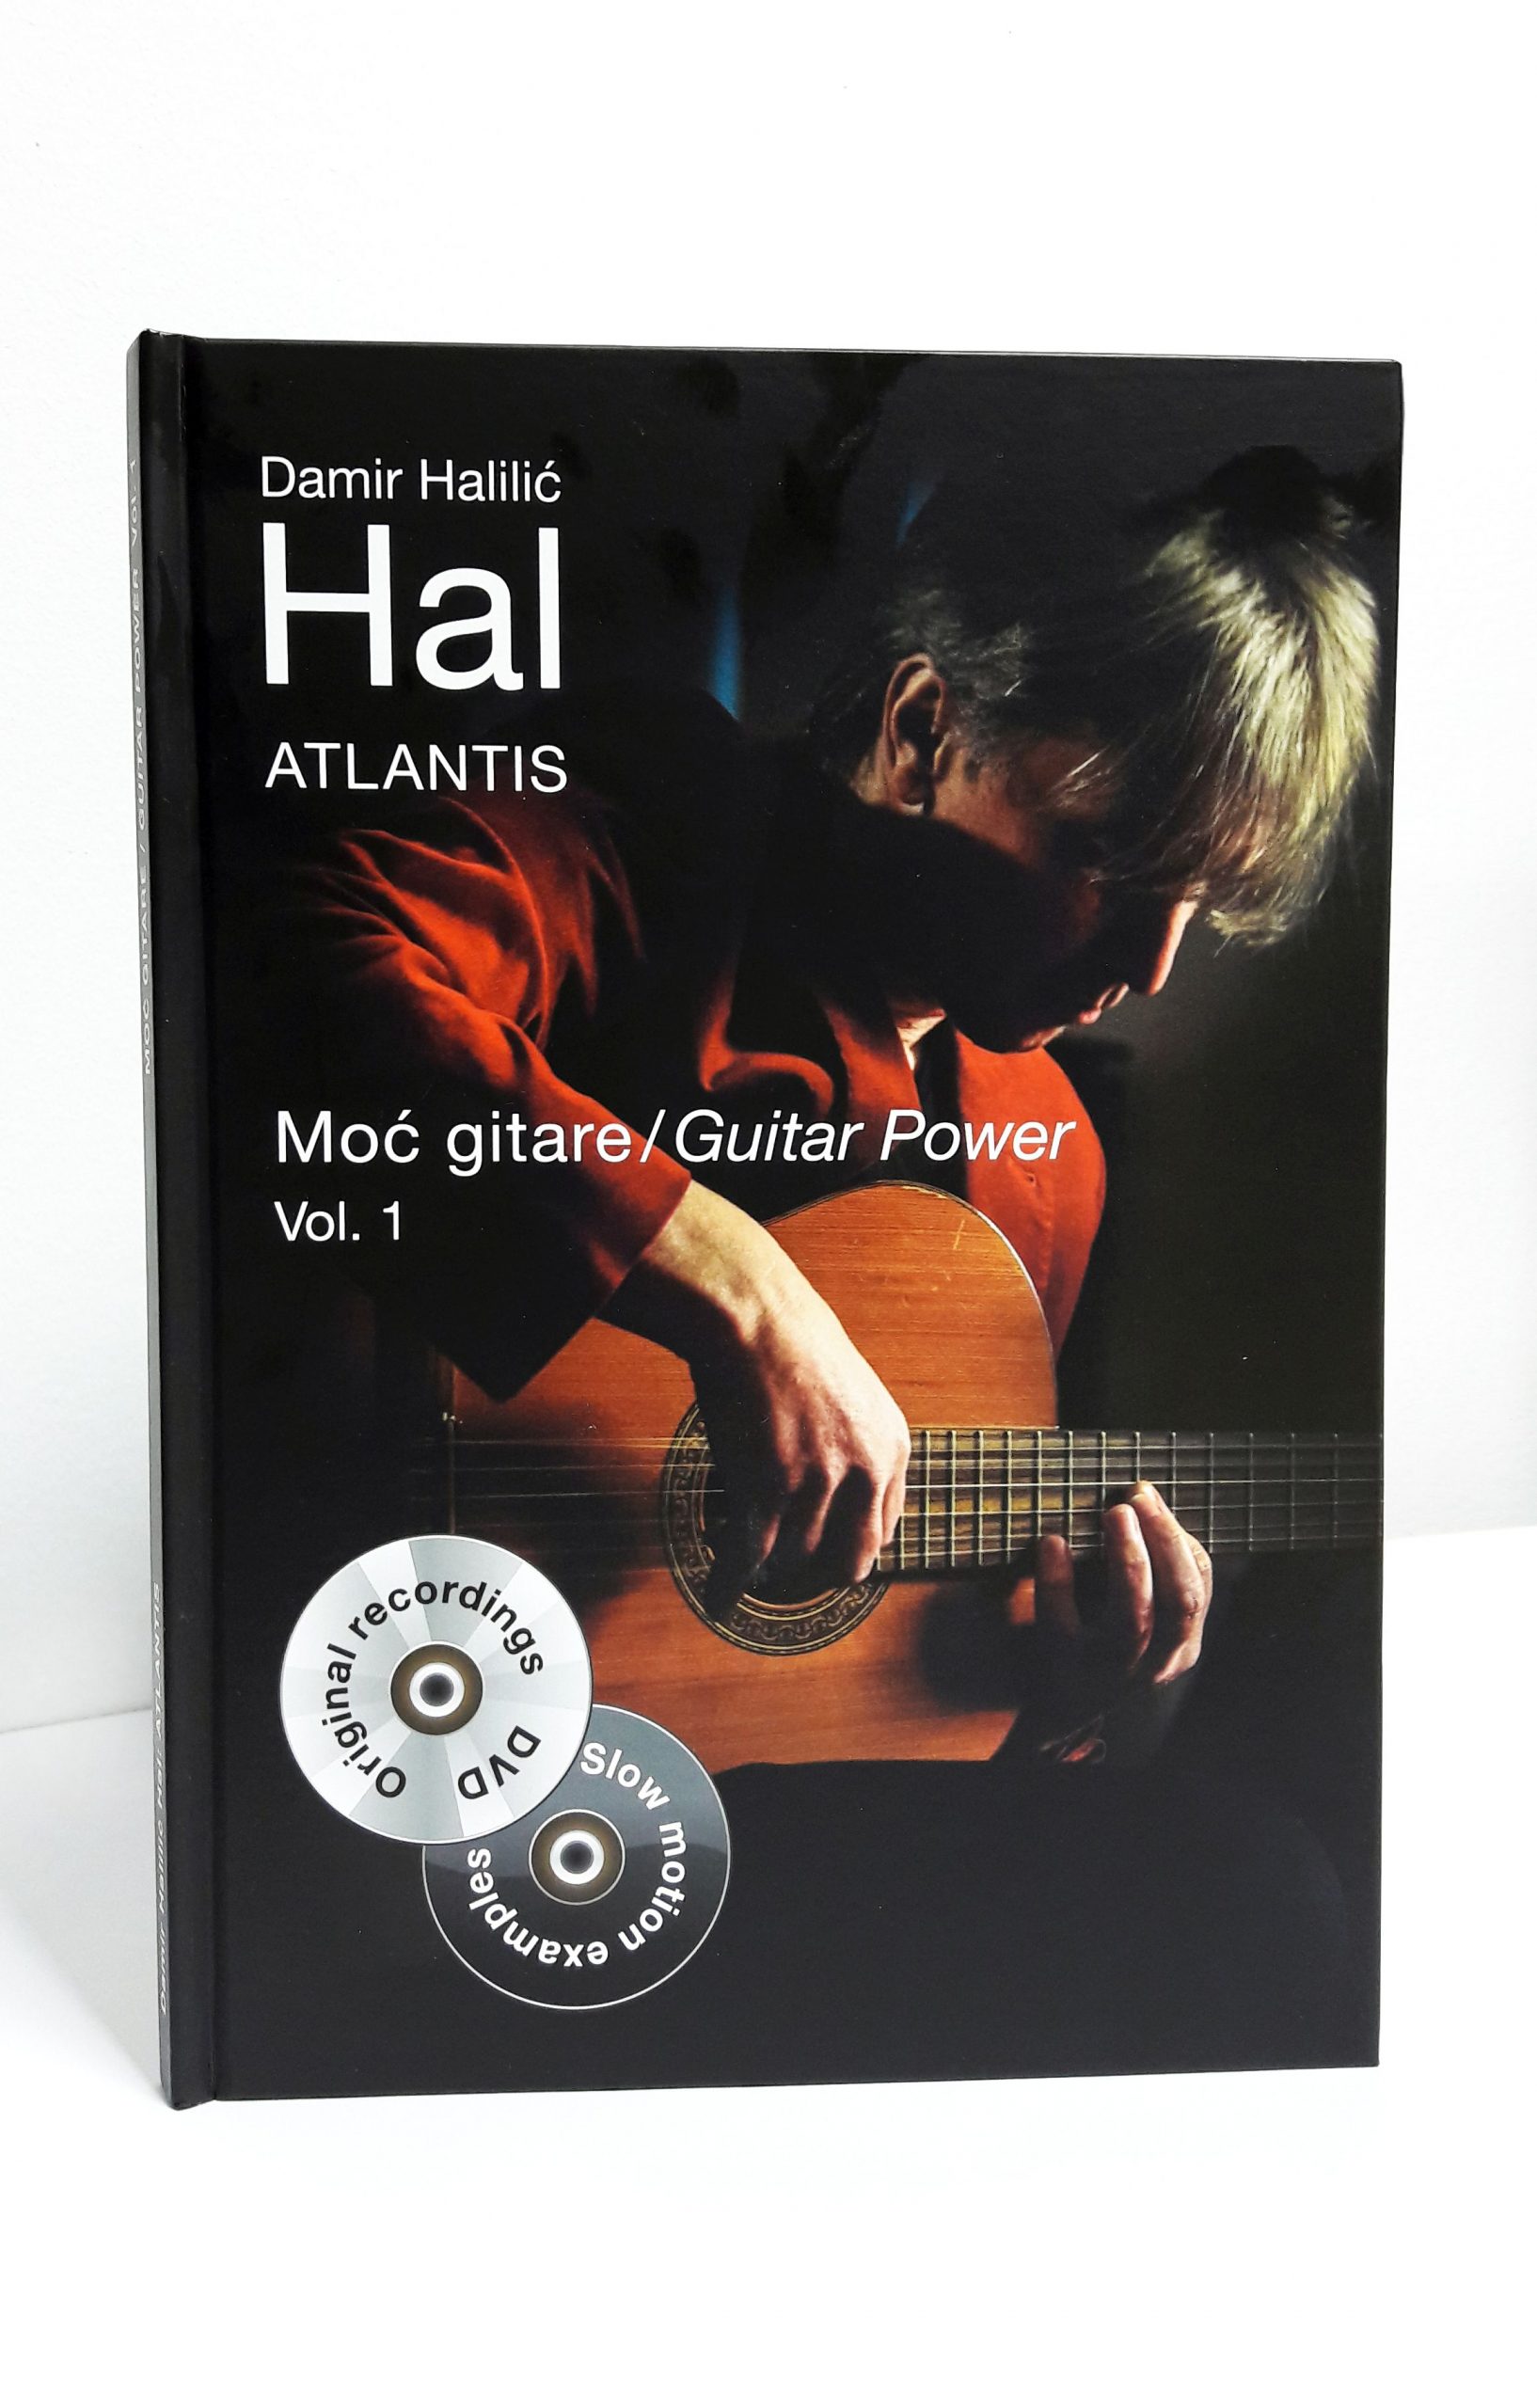 You are currently viewing Gitaristički virtuoz i skladatelj Damir Halilić HAL objavio je luksuzno izdanje za sve gitariste! Knjigu s notnim zapisom+2 DVDa ‘Atlantis’